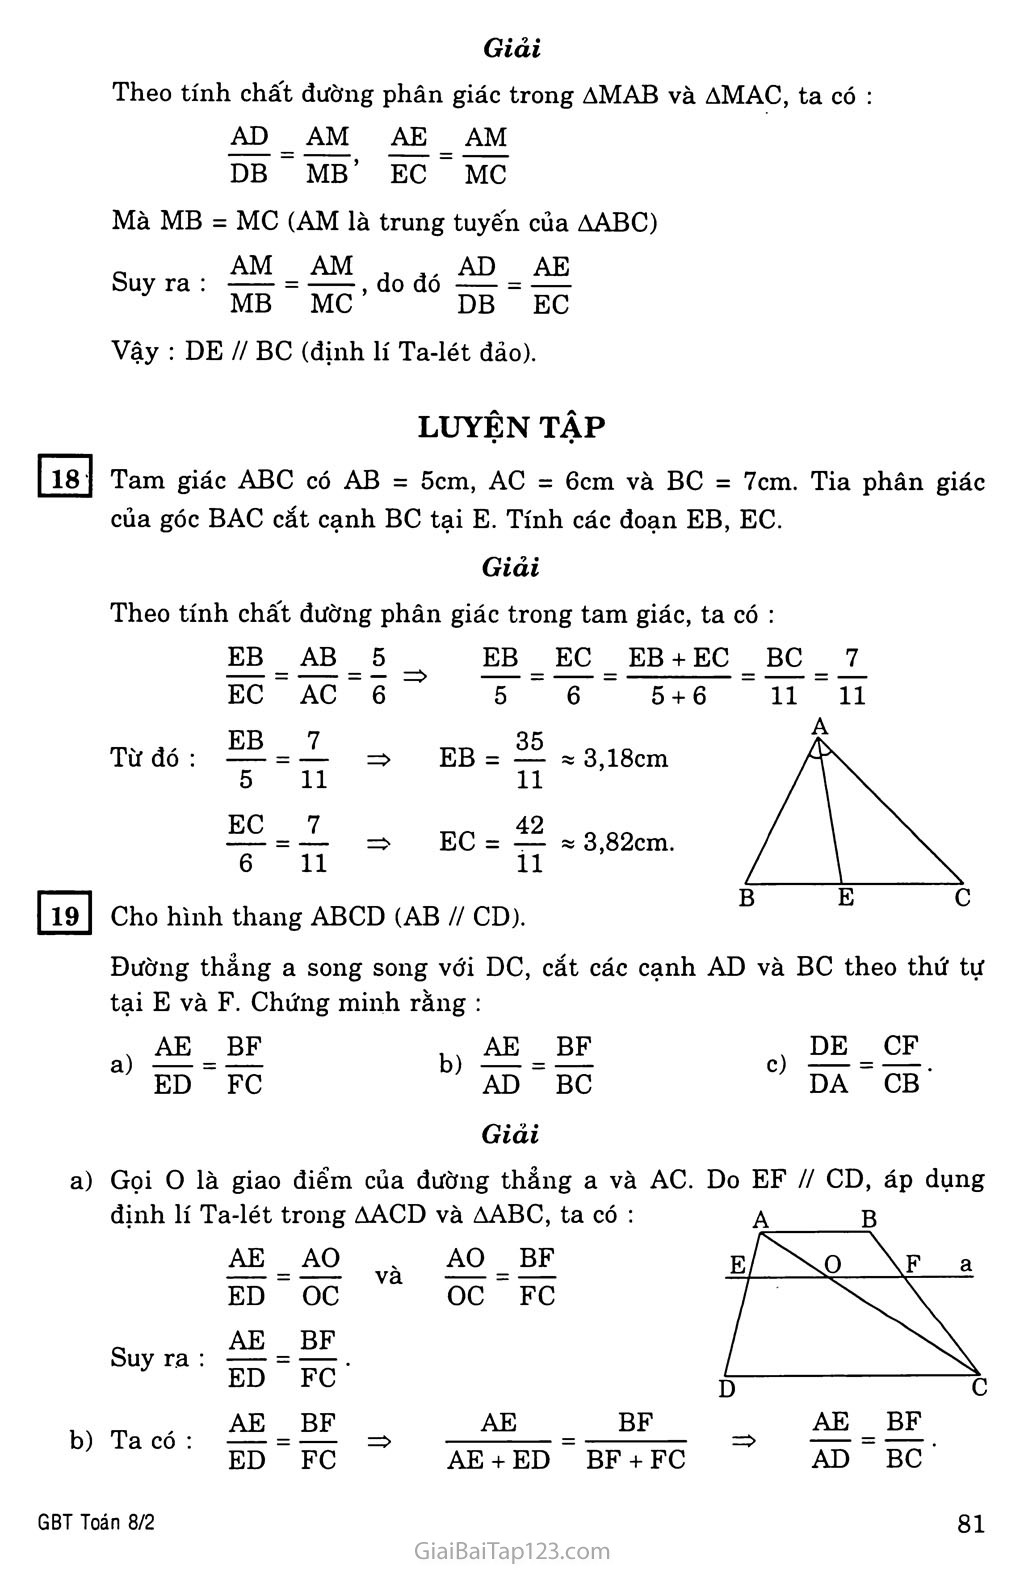 §3. Tính chất đường phân giác của tam giác trang 3